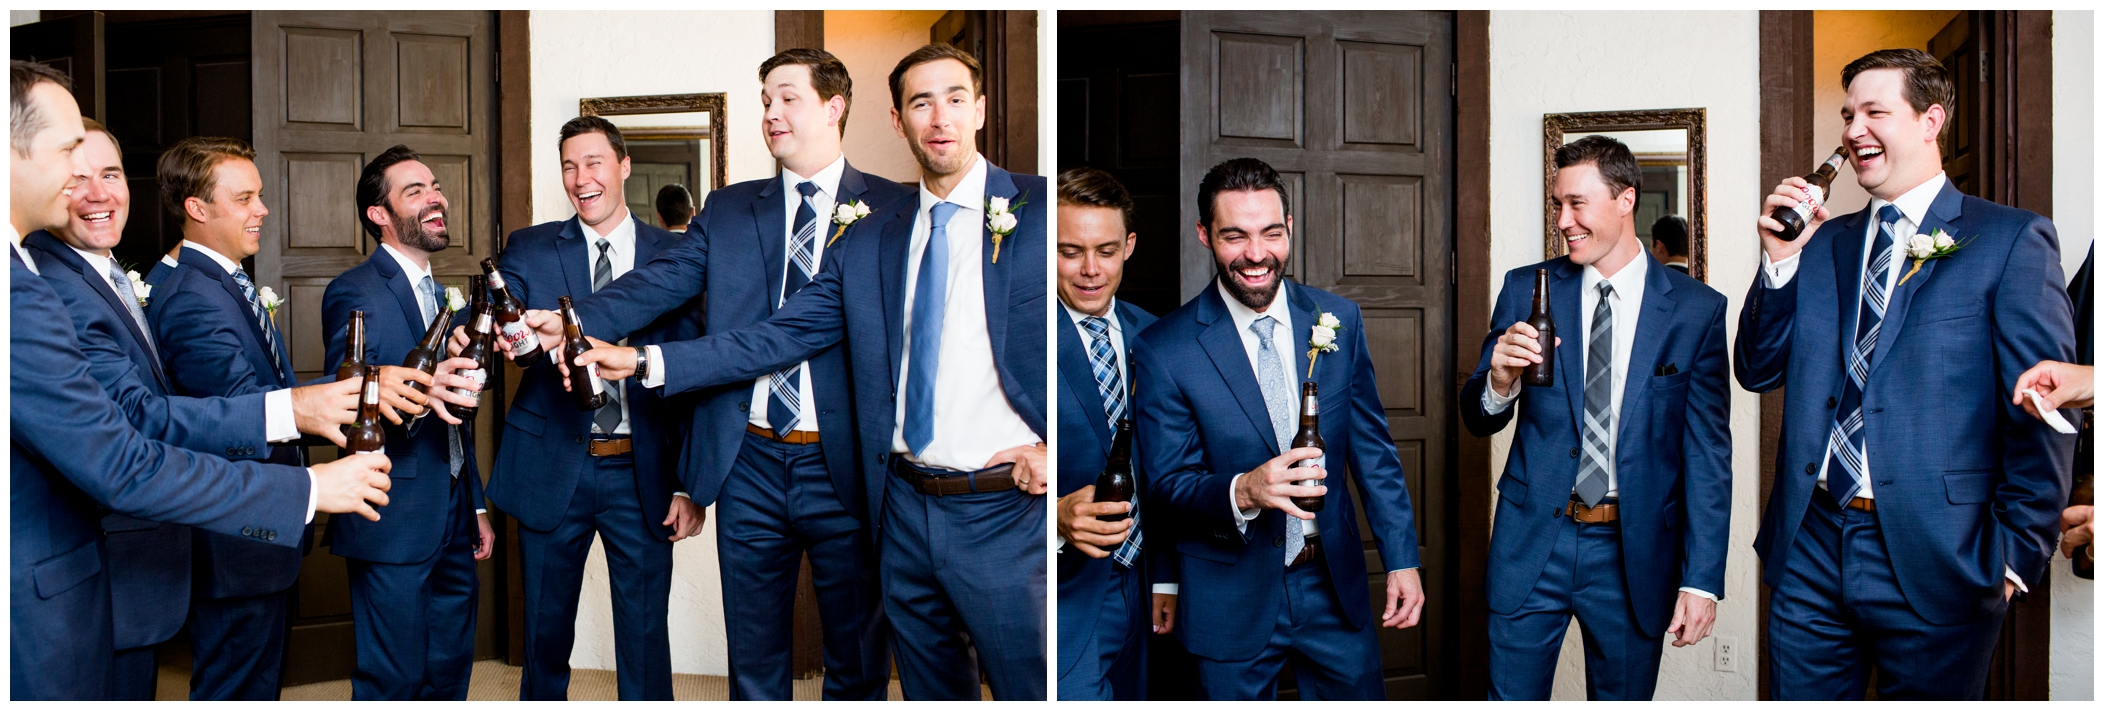 groomsmen in blue suits toasting beers